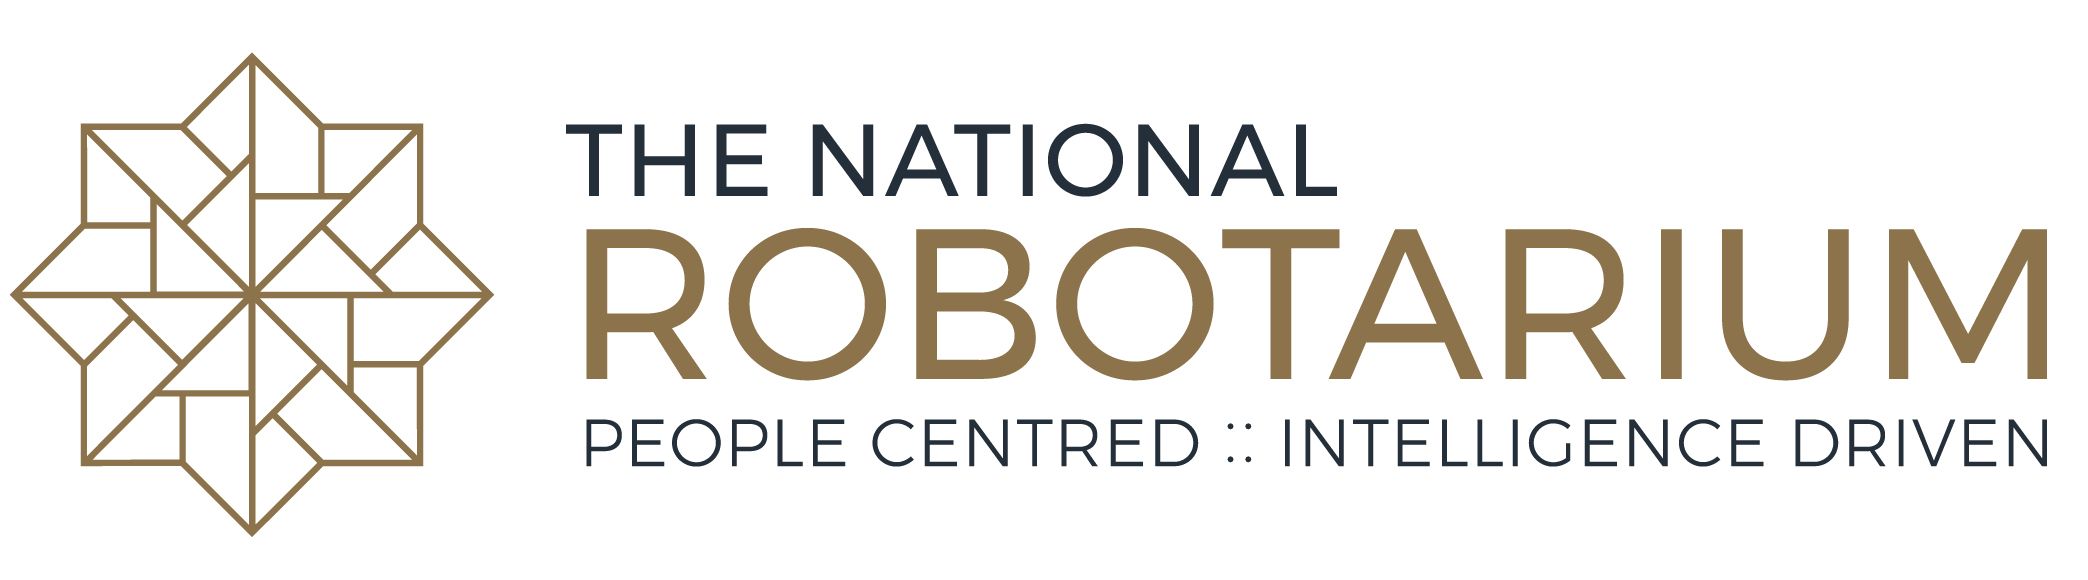 The National Robotarium